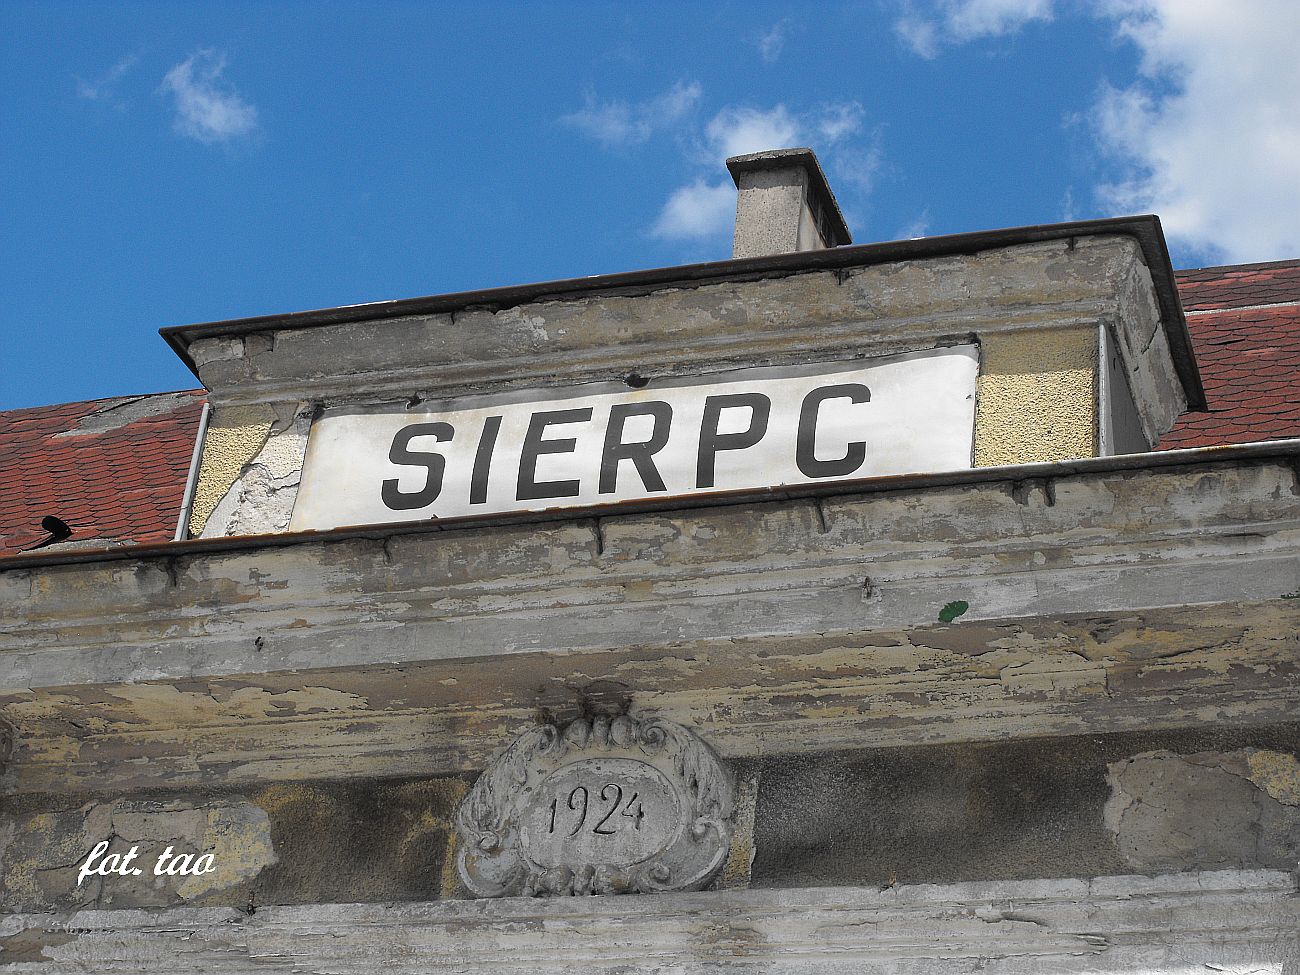 Stacja Sierpc. 2014-1924=90 - to ju tyle lat. Pamitamy, ale czy 